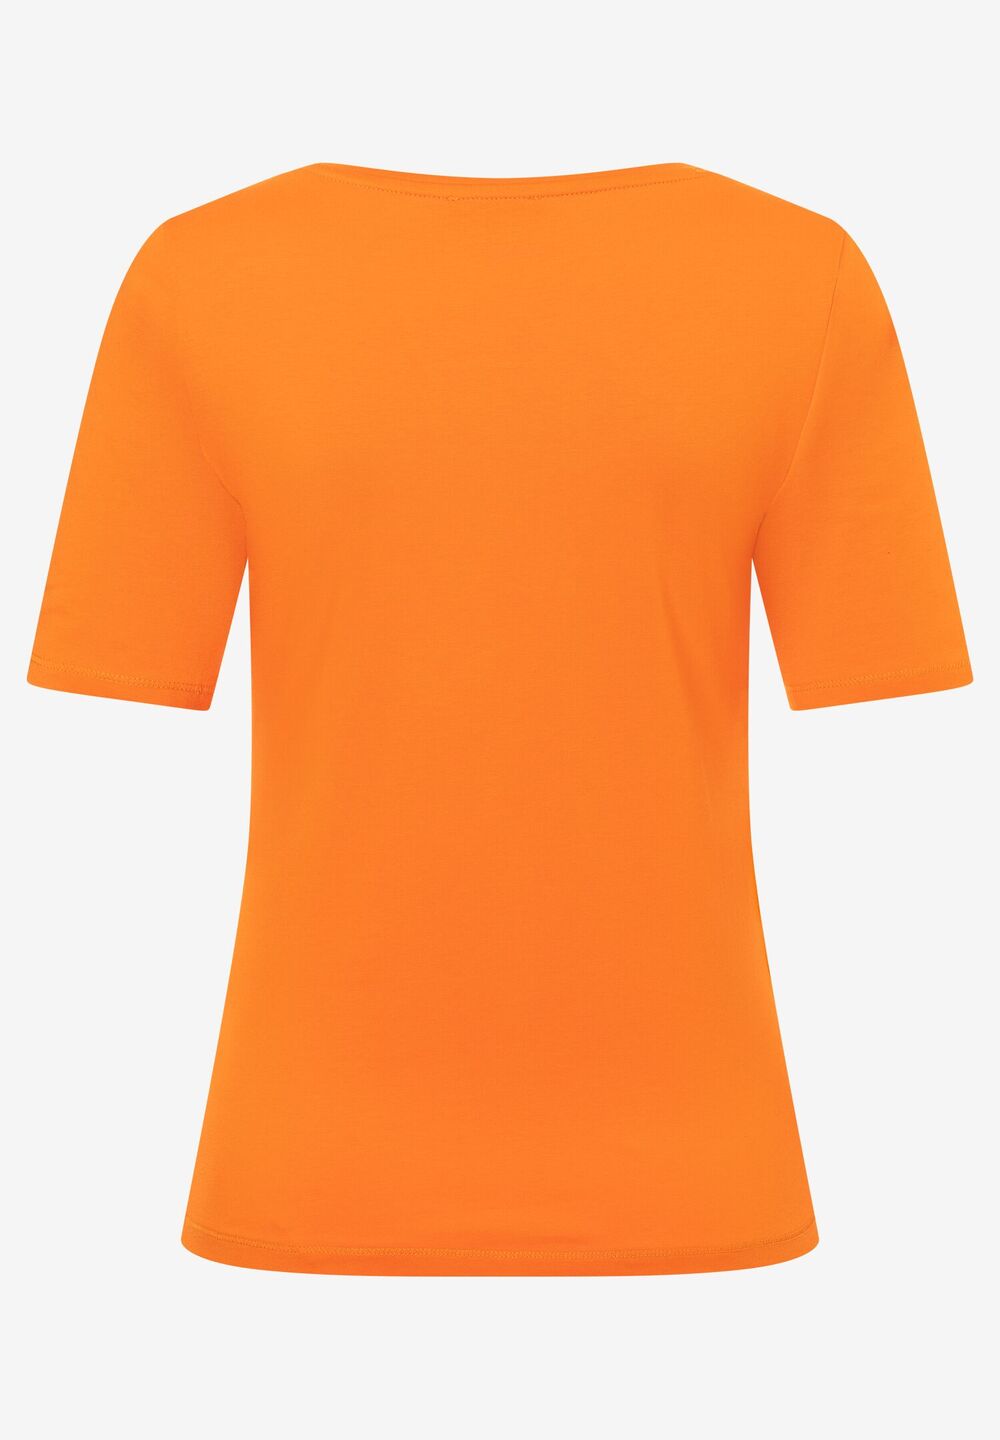 T-Shirt, U-Boot Ausschnitt, fresh orange, Frühjahrs-Kollektion, orangeDetailansicht 2